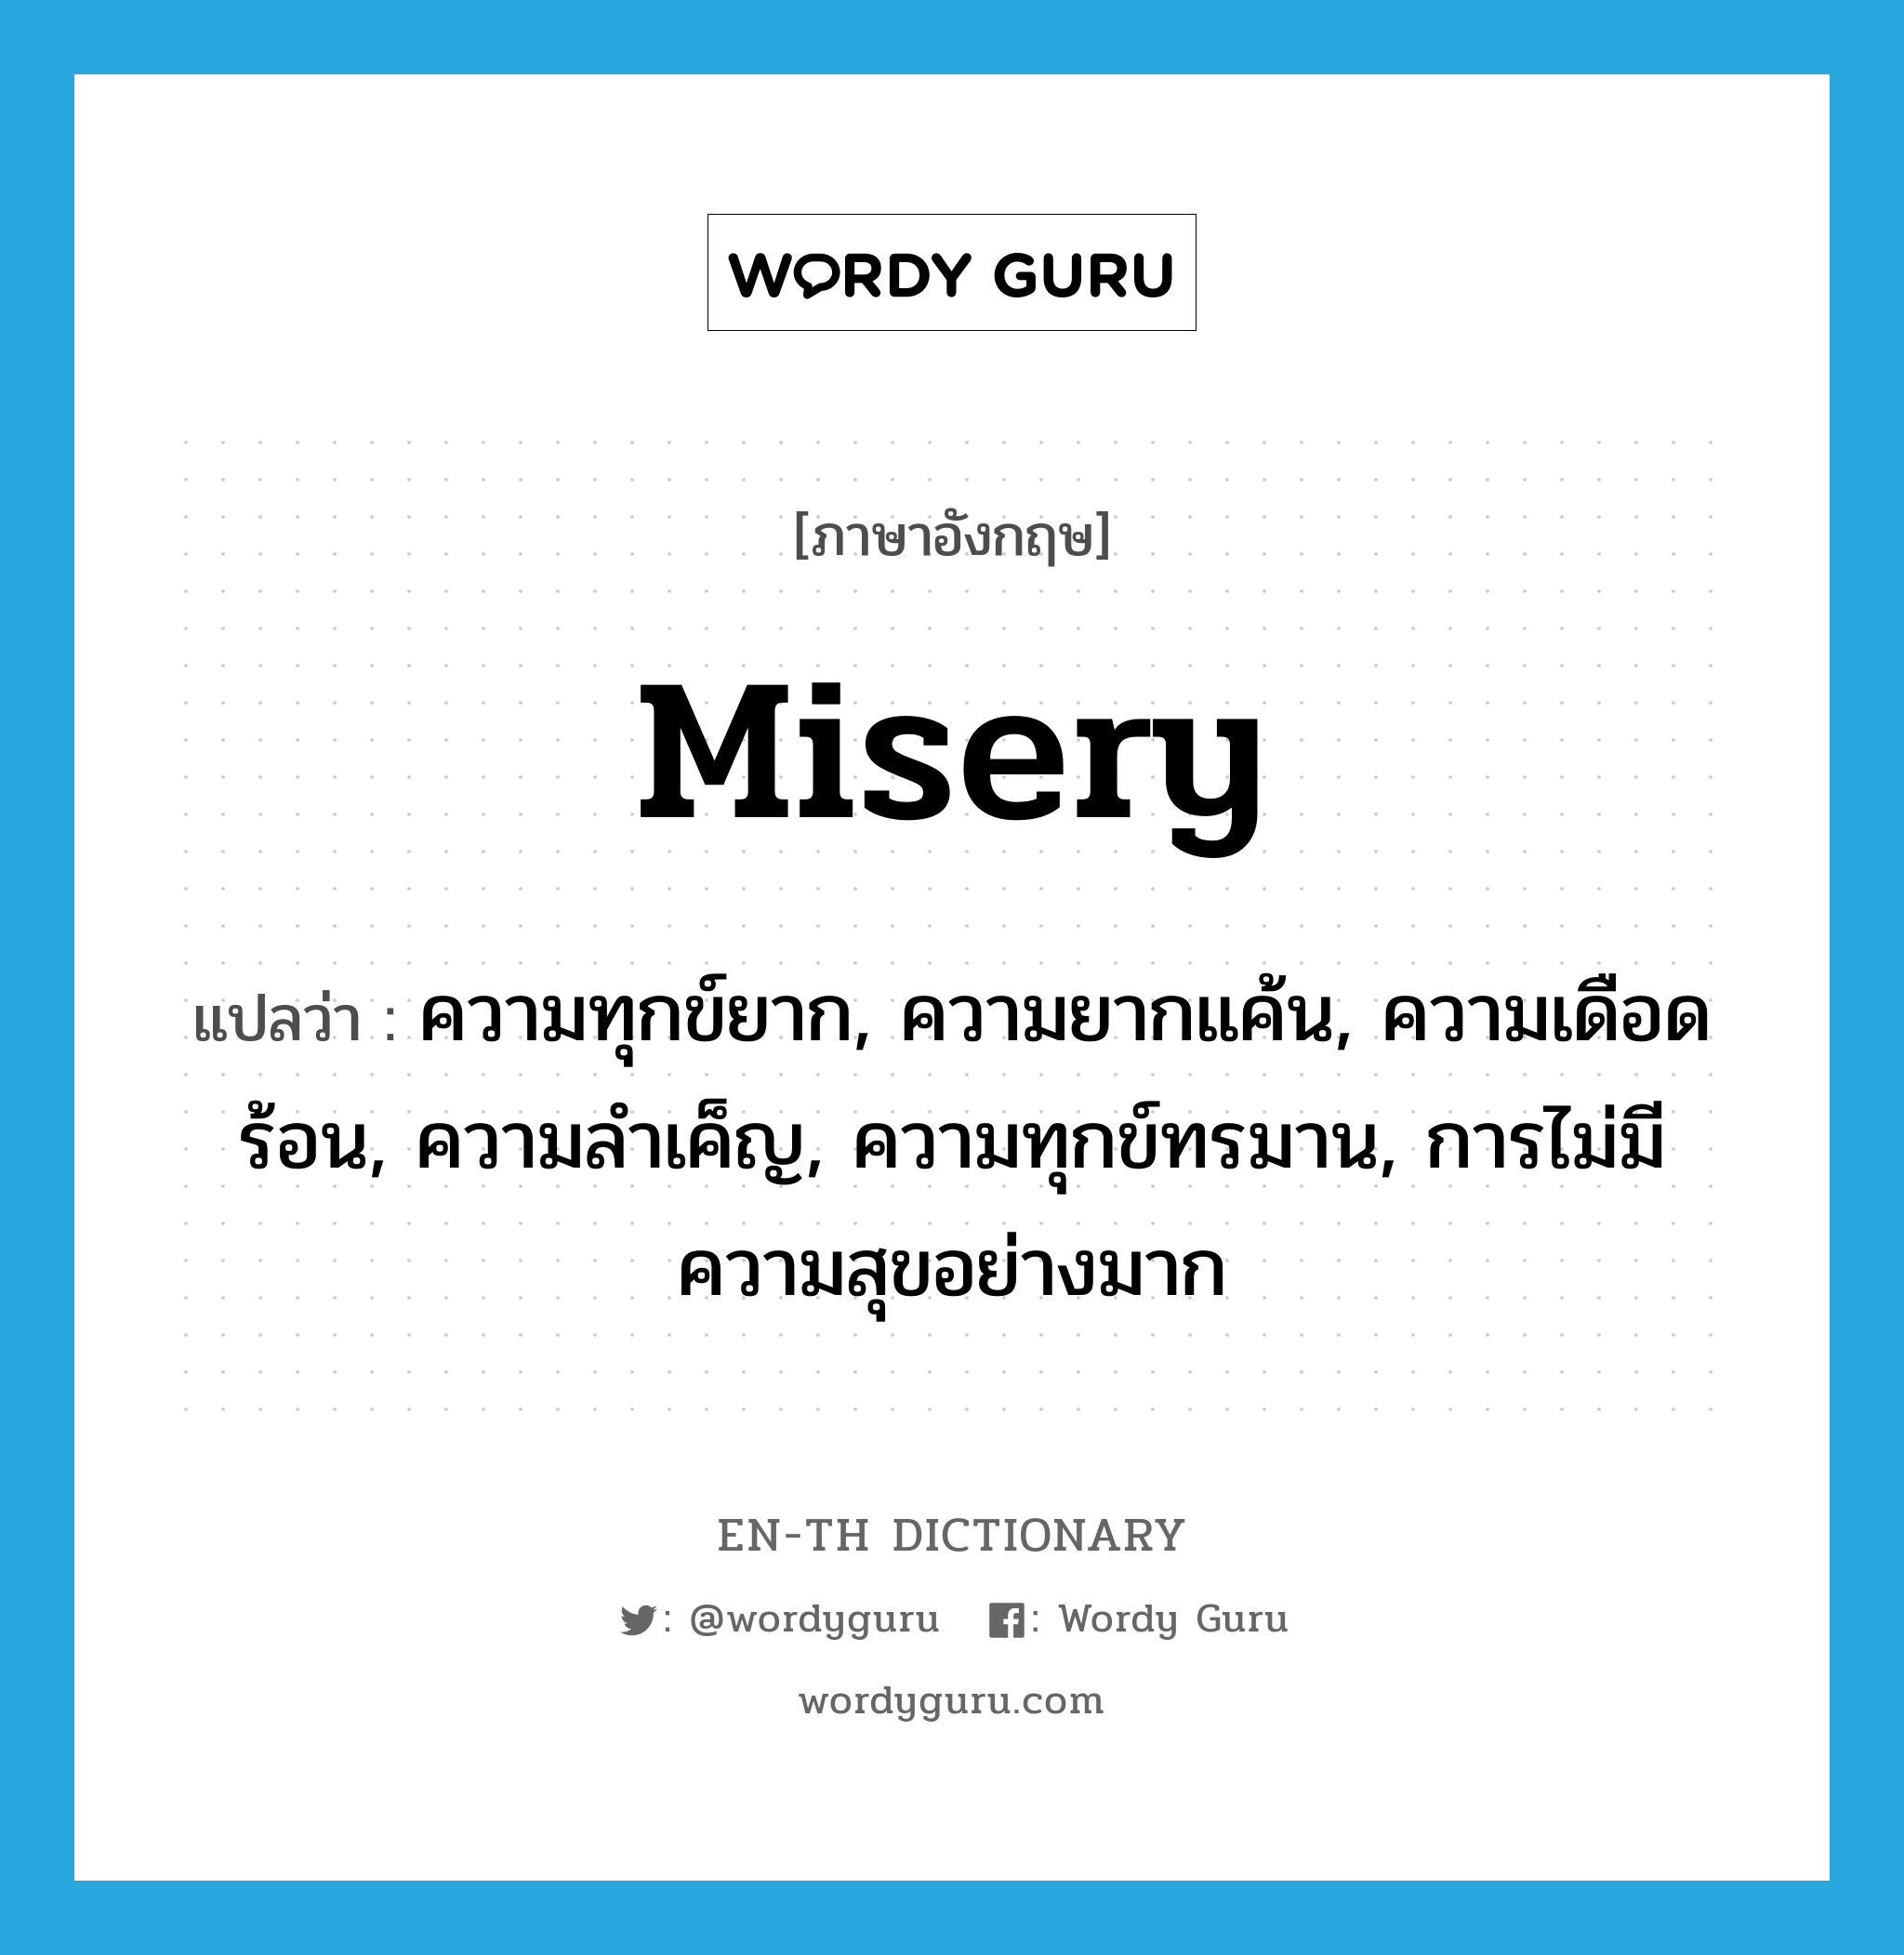 misery แปลว่า?, คำศัพท์ภาษาอังกฤษ misery แปลว่า ความทุกข์ยาก, ความยากแค้น, ความเดือดร้อน, ความลำเค็ญ, ความทุกข์ทรมาน, การไม่มีความสุขอย่างมาก ประเภท N หมวด N